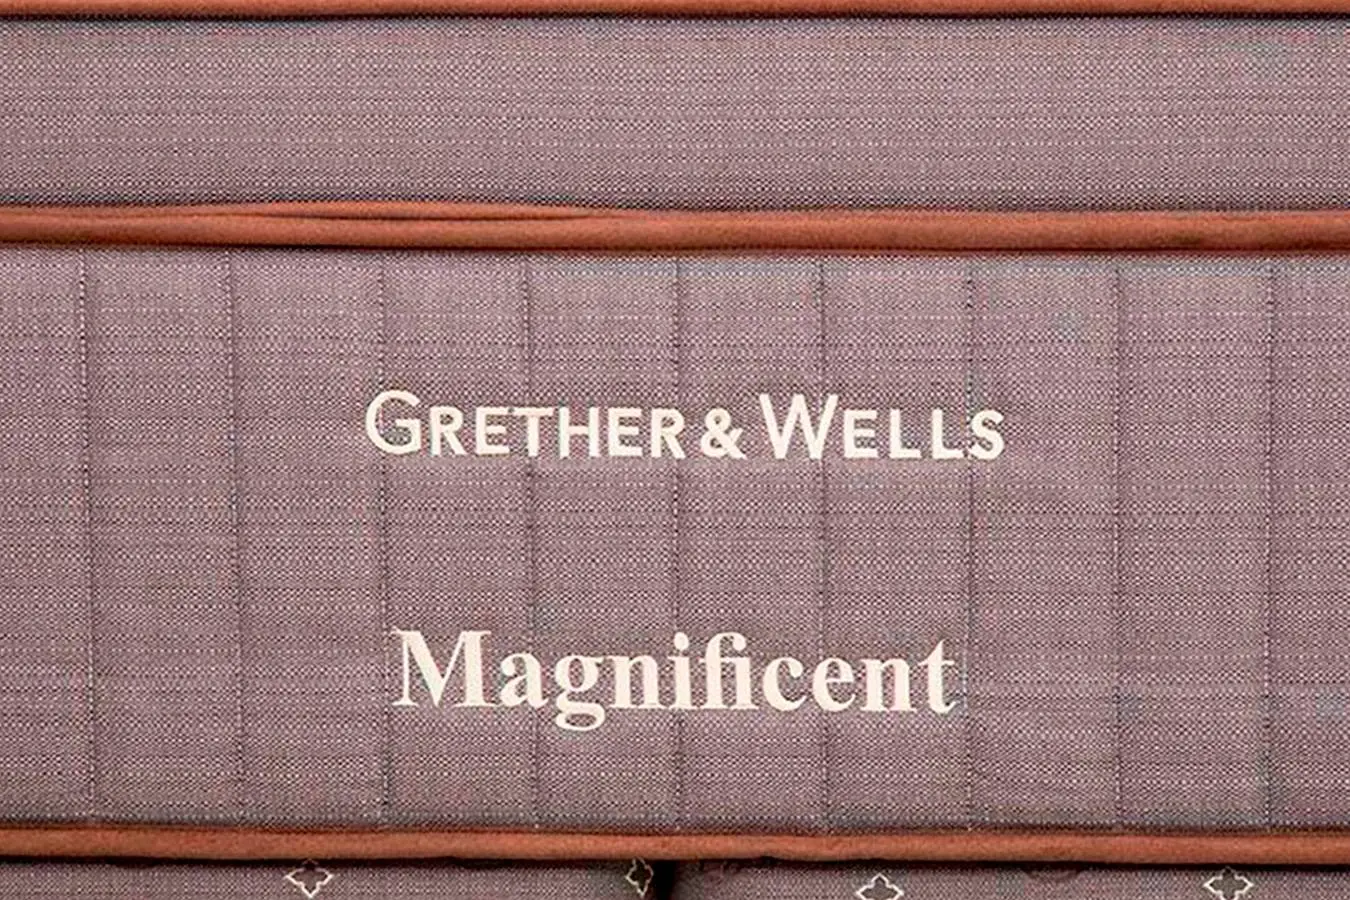 Матрас GRETHER & WELLS Magnificent бежевый Askona изображение товара - 4 - большое изображение